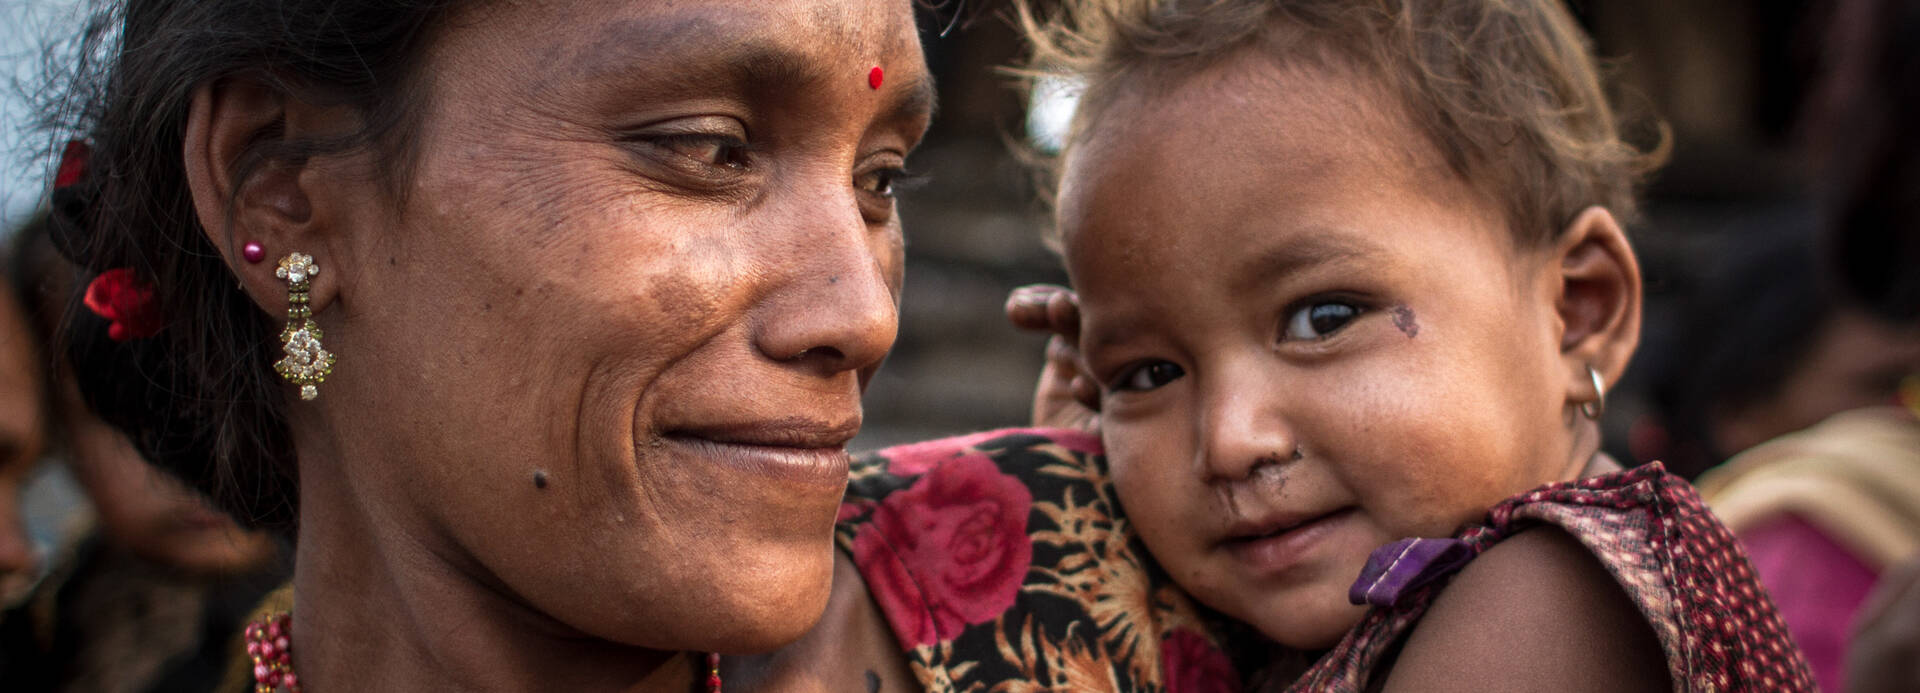 Eine Mutter mit ihrem Kind in Nepal